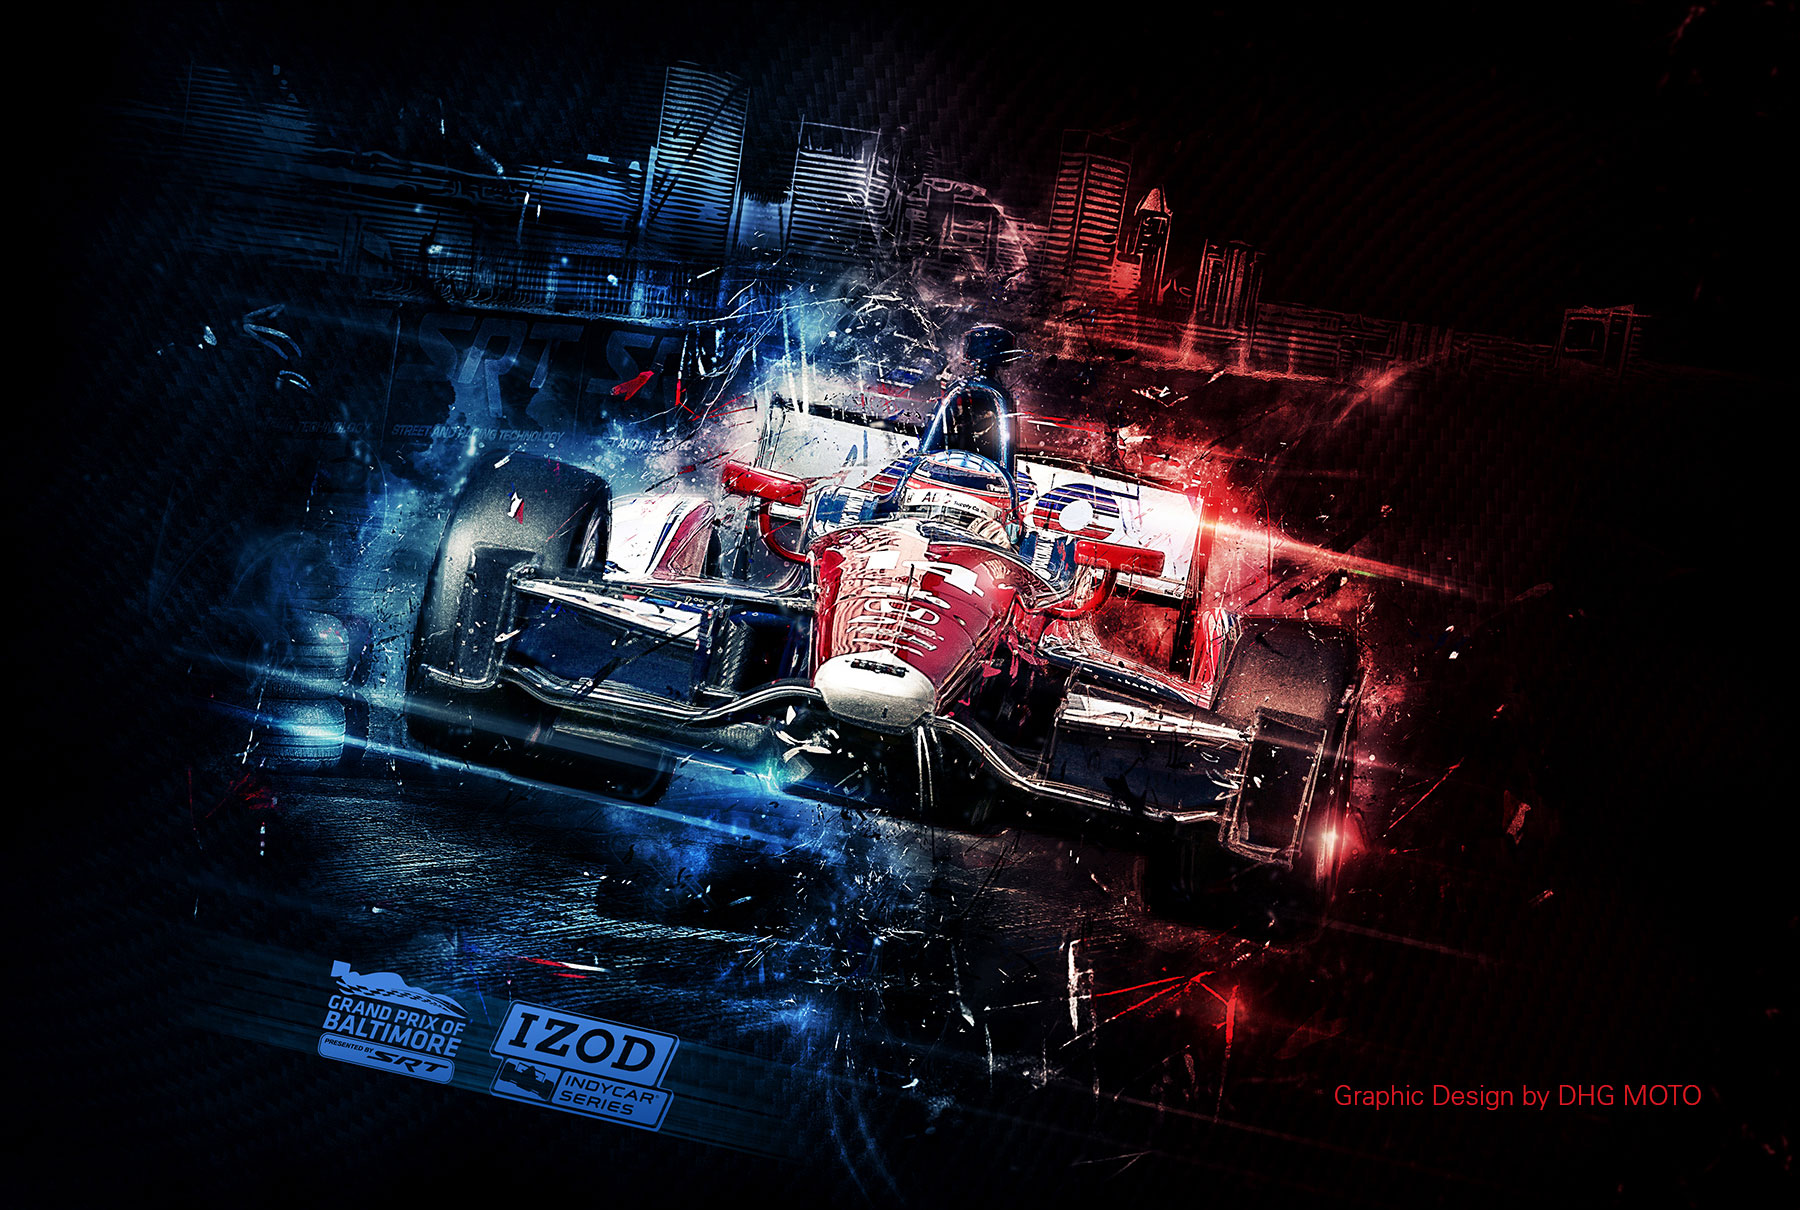 Baltimore Grand Prix - Graphic Design by DHG MOTO